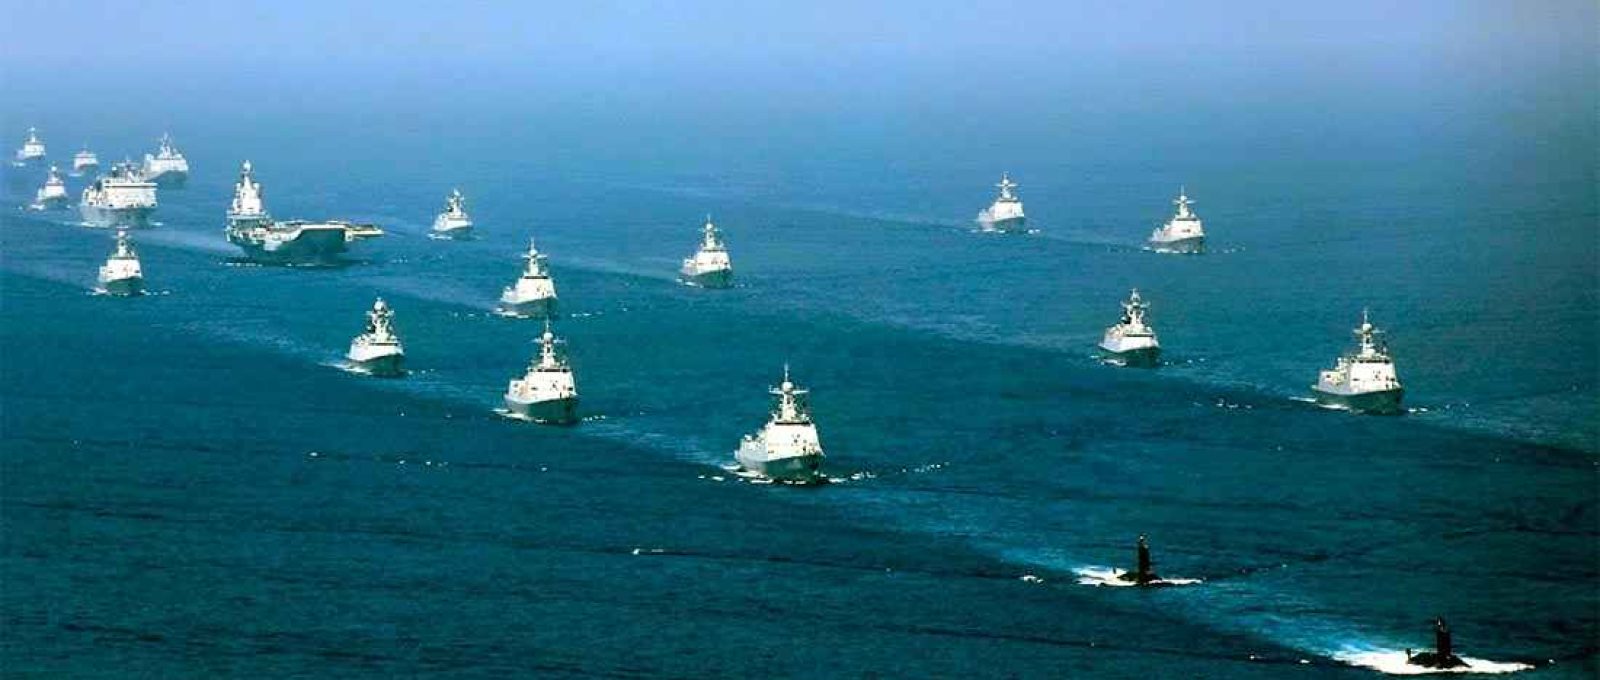 O porta-aviões chinês Liaoning acompanhado por fragatas e submarinos durante exercícios no Mar do Sul da China em 12 de abril de 2018 (Foto: Li Gang/Xinhua via AP).